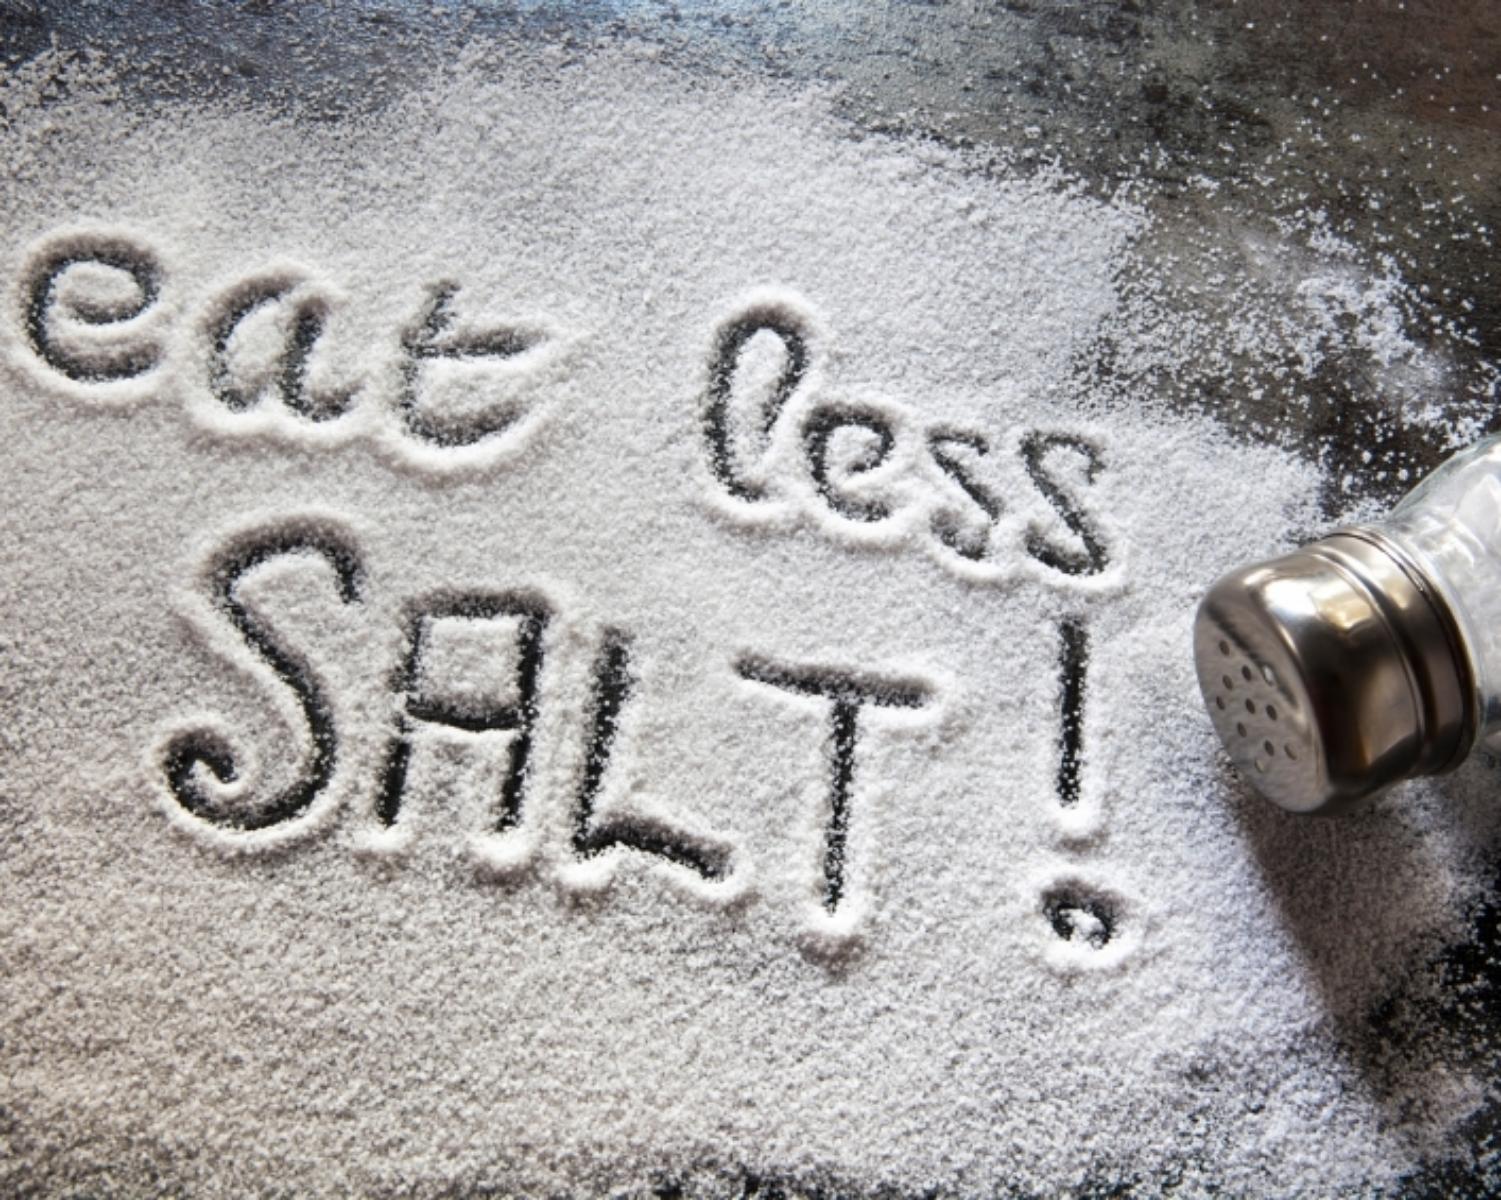 5. Reduce salt and sugar intake